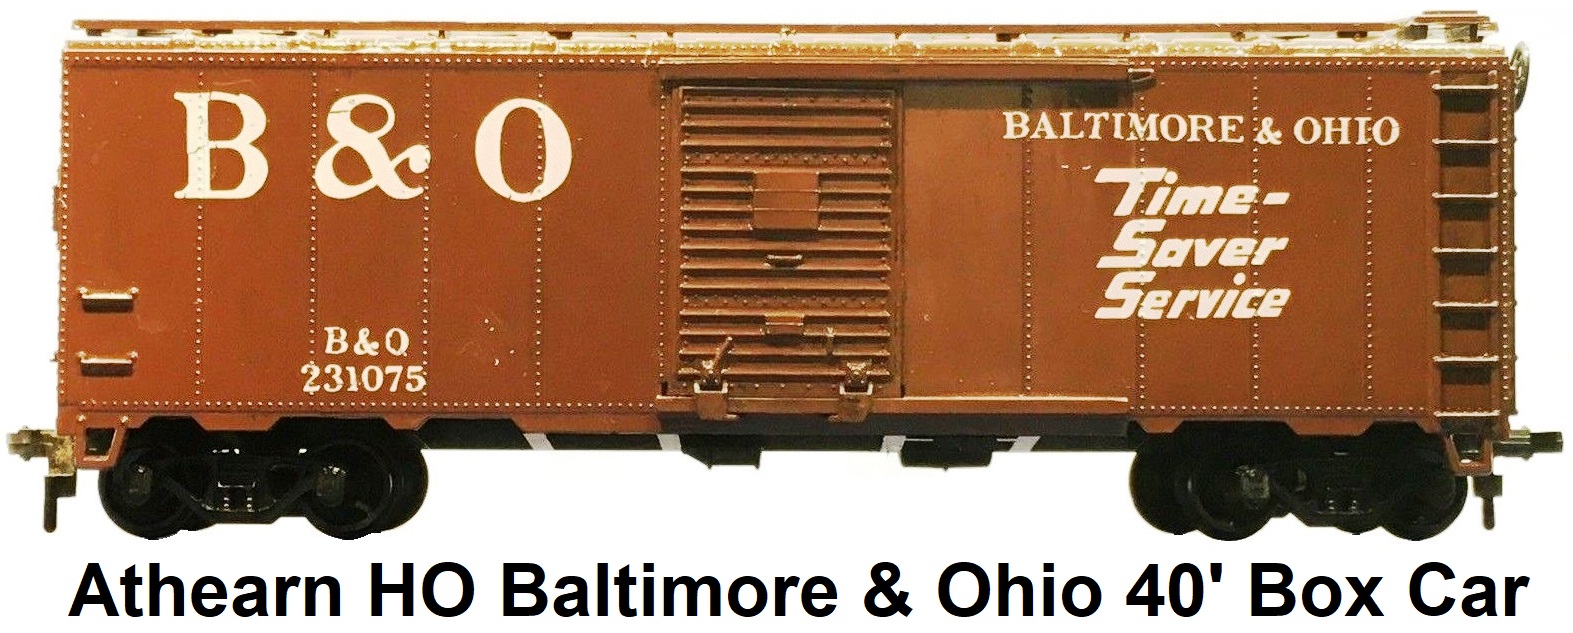 Athearn HO Baltimore & Ohio B&O 231075 40' Box Car